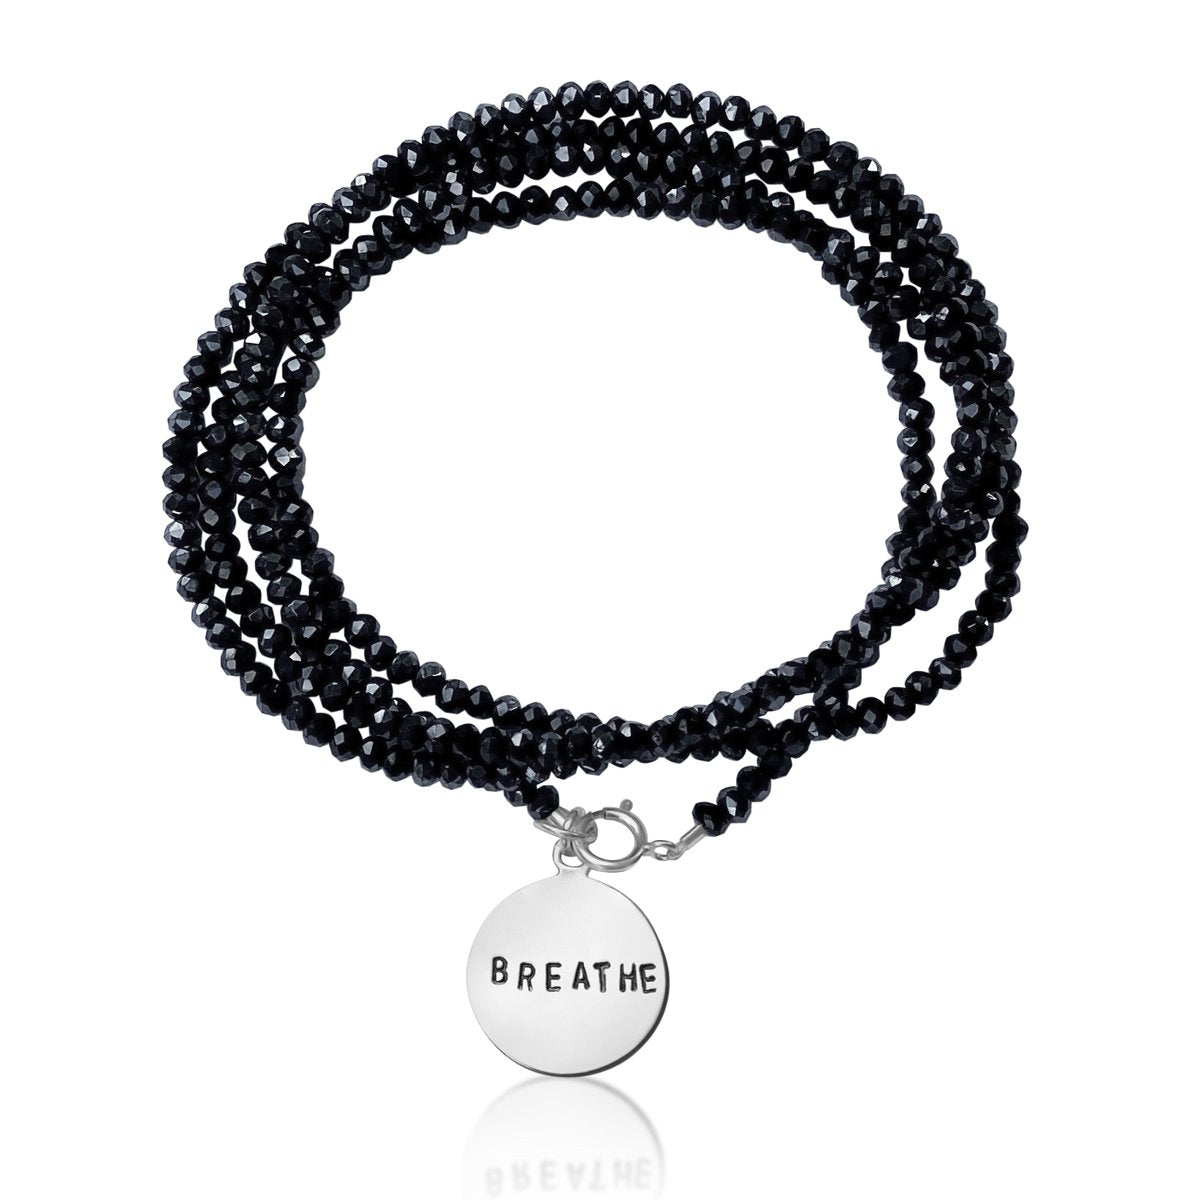 BREATHE Reminder Wrap Bracelet with Midnight Dark Crystals.